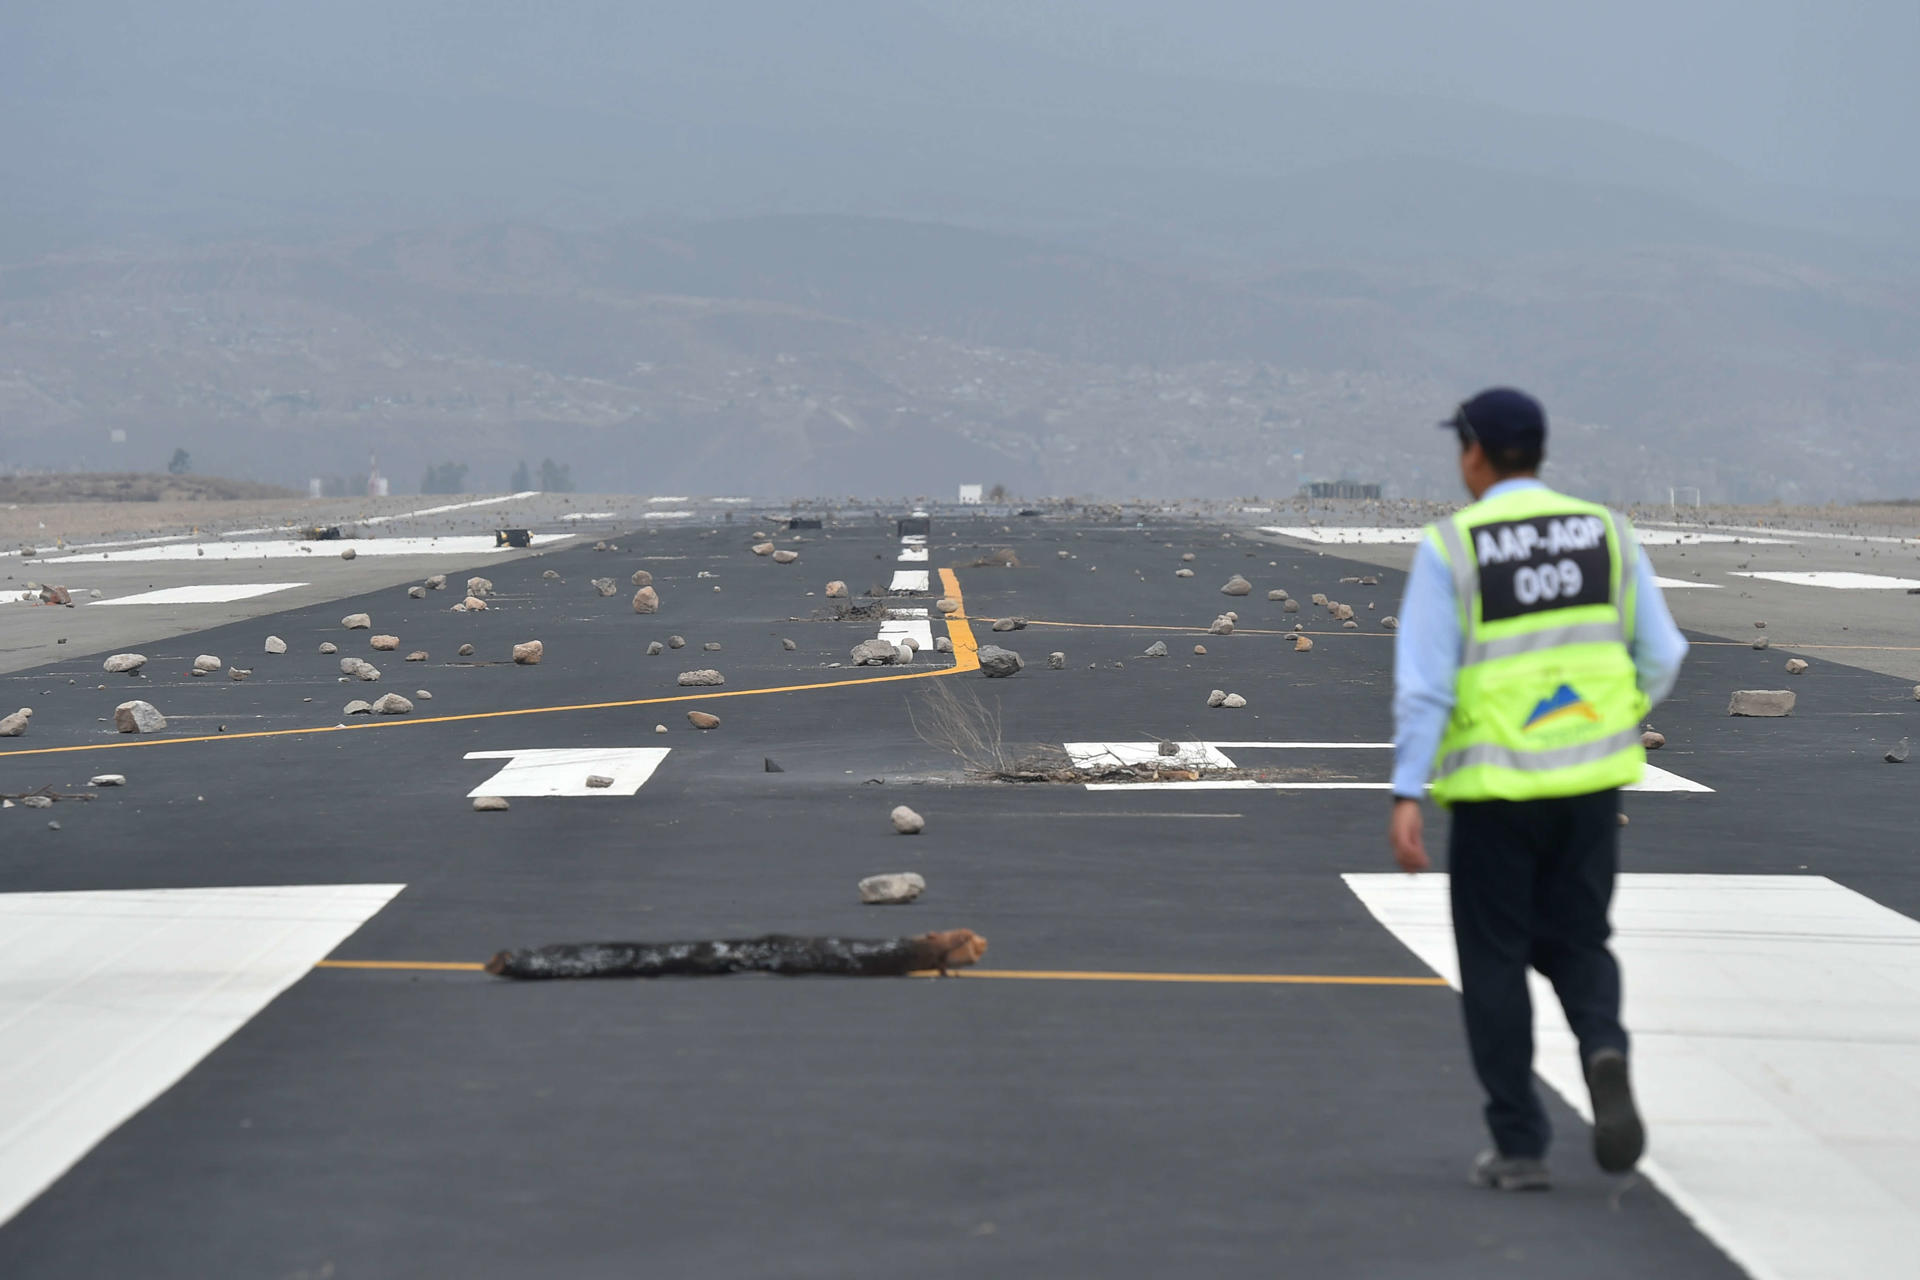 Fotografía de archivo que muestra los escombros y piedras que obstaculizan una pista de aterrizaje del aeropuerto Alfredo Rodríguez Ballón, durante una protesta, en la ciudad de Arequipa (Perú). EFE/ José Sotomayor